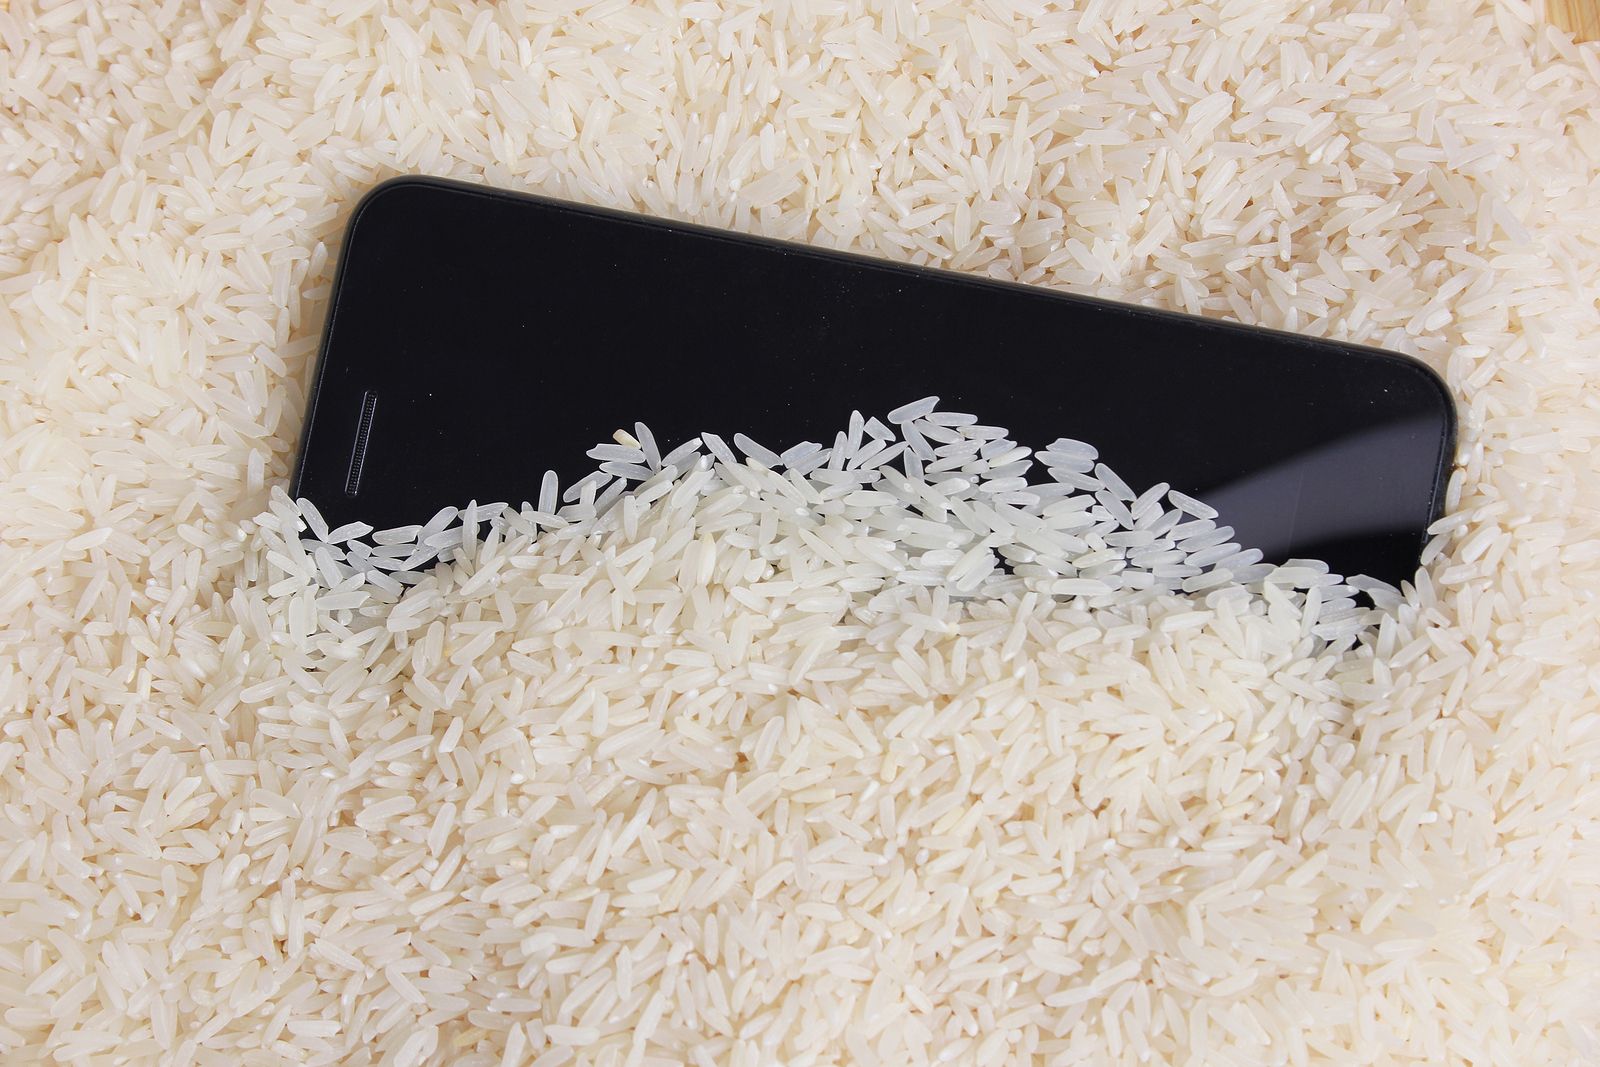 Apple desmonta de una vez por todas el mito del arroz para secar el móvil